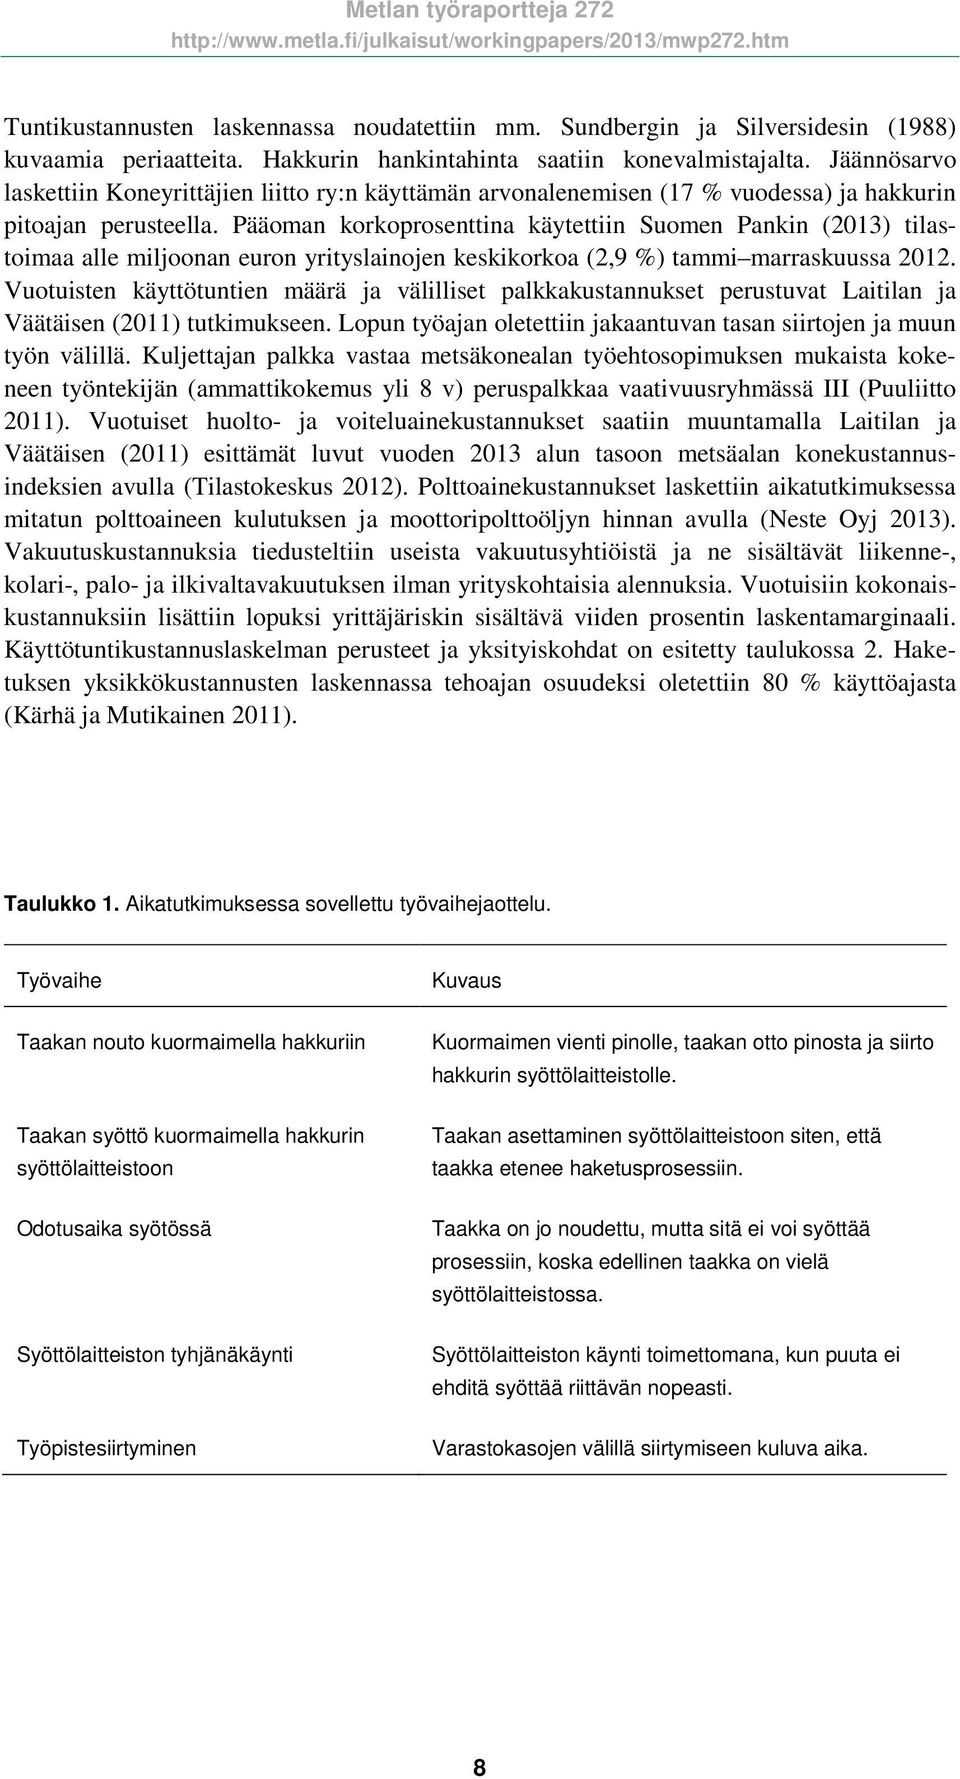 Pääoman korkoprosenttina käytettiin Suomen Pankin (2013) tilastoimaa alle miljoonan euron yrityslainojen keskikorkoa (2,9 %) tammi marraskuussa 2012.